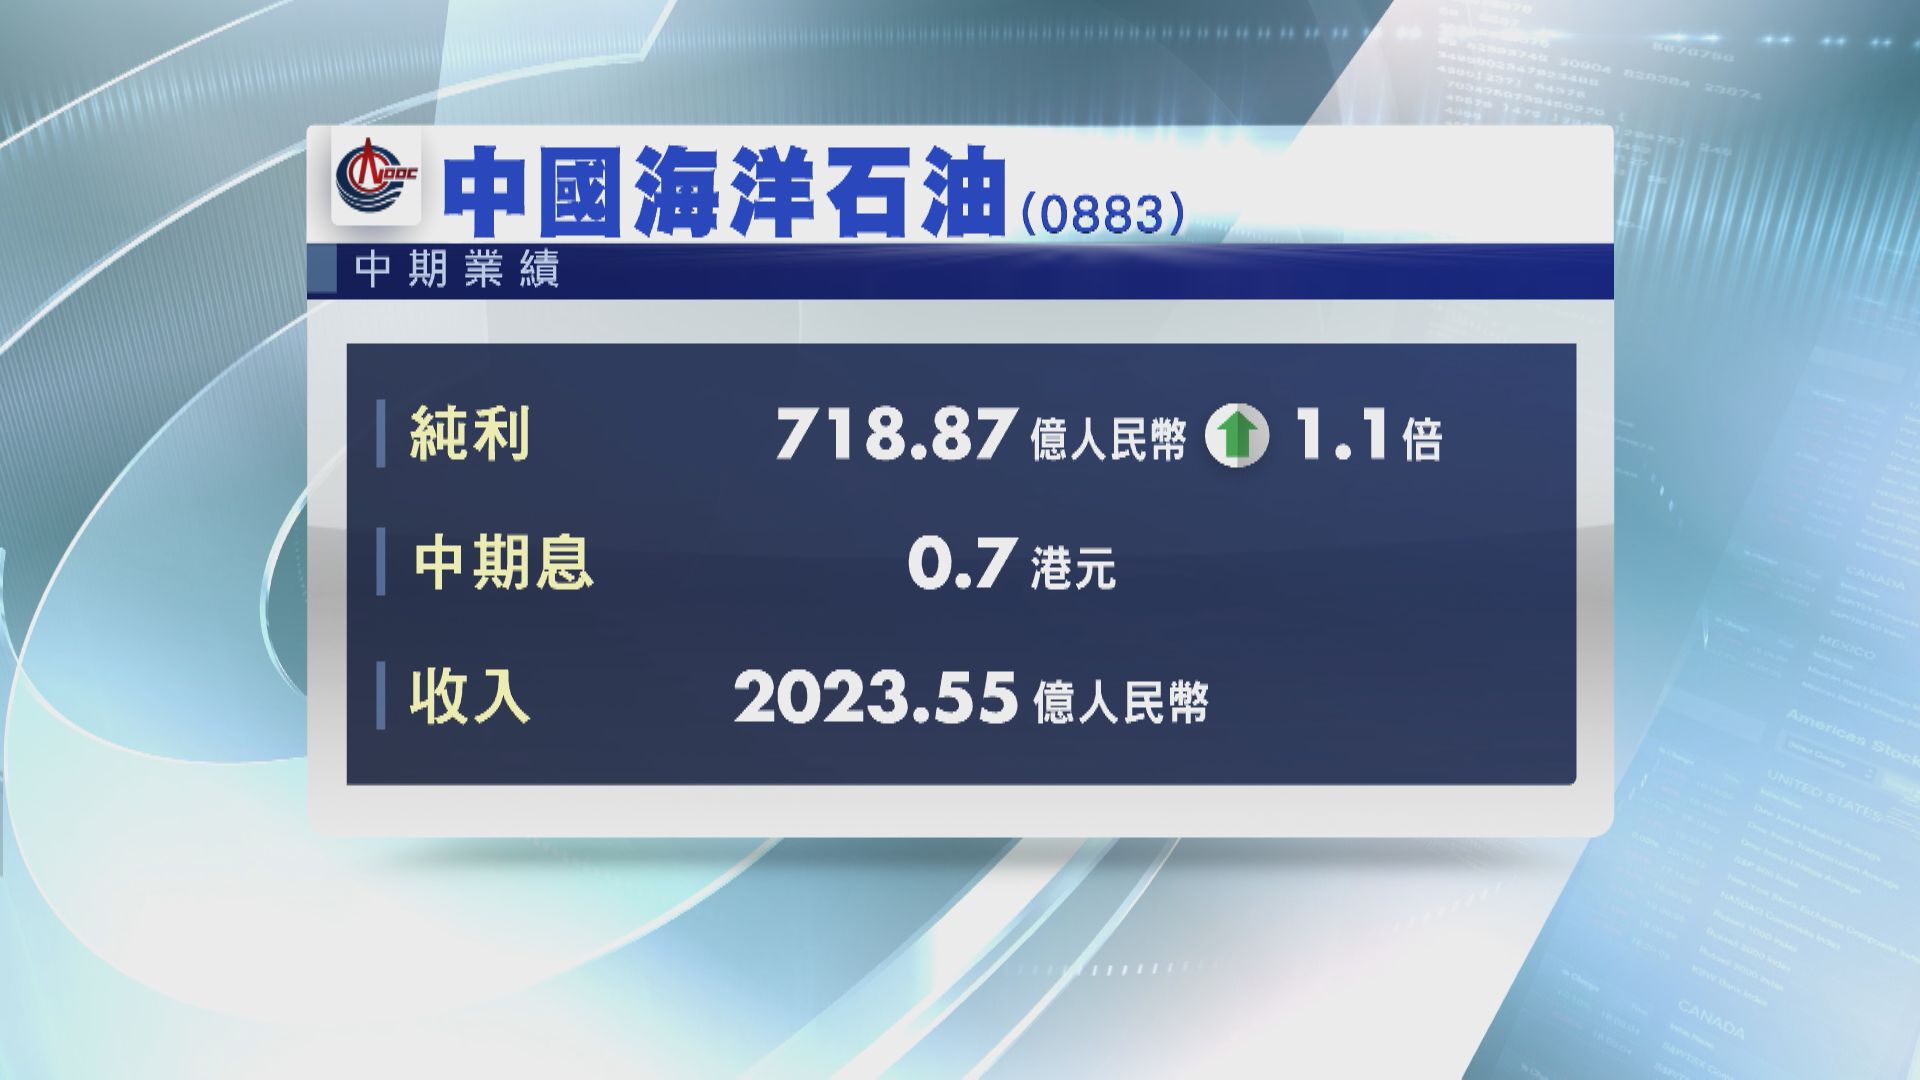 【業績速報】中海油純利增1.1倍 國壽少賺近38%